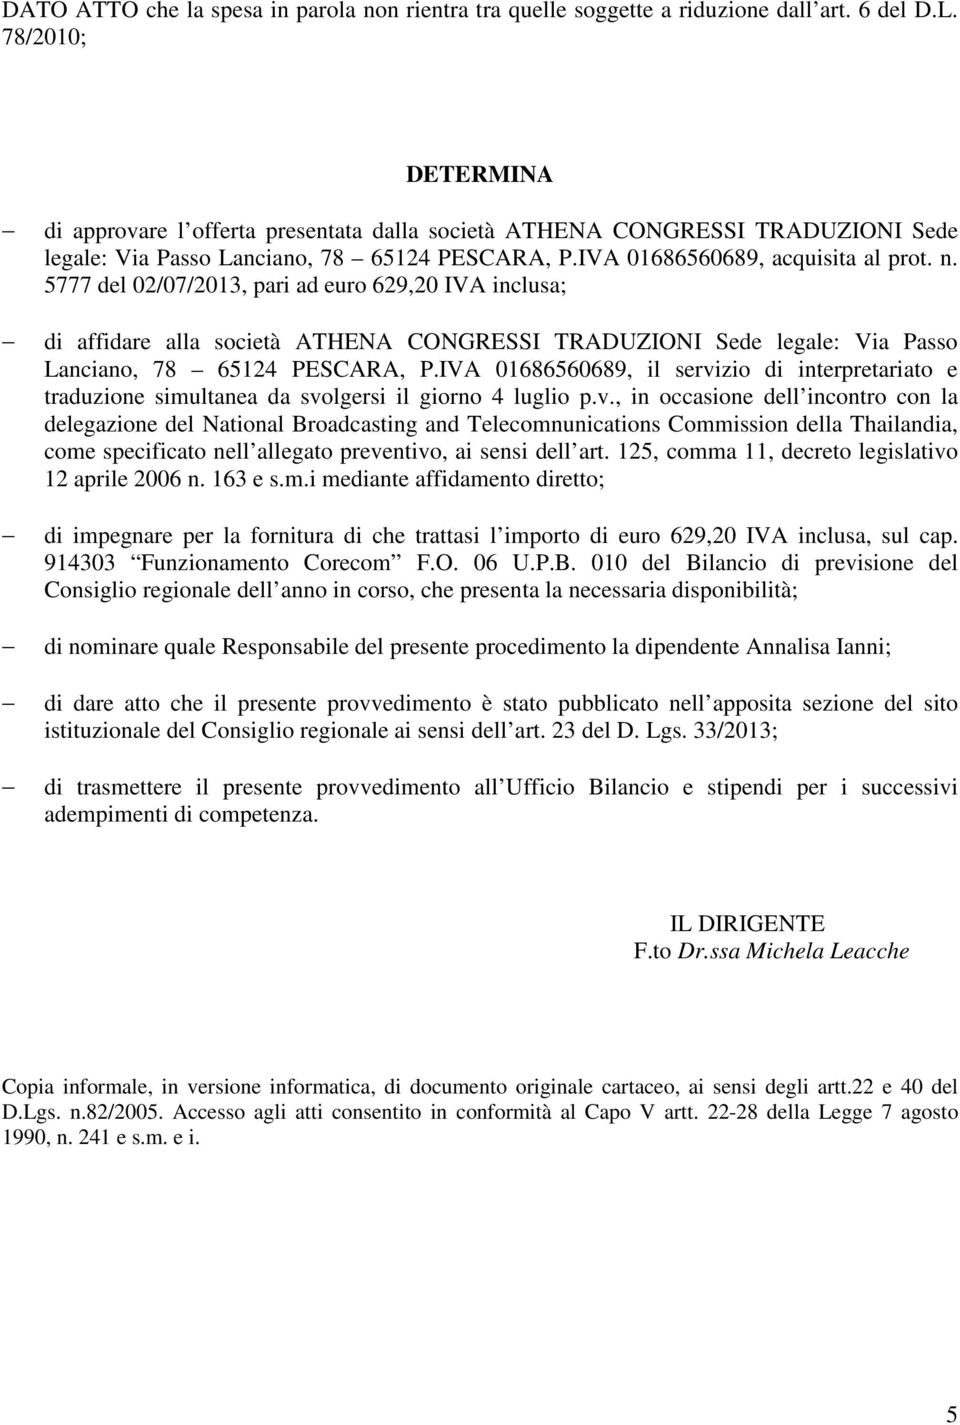 5777 del 02/07/2013, pari ad euro 629,20 IVA inclusa; di affidare alla società ATHENA CONGRESSI TRADUZIONI Sede legale: Via Passo Lanciano, 78 65124 PESCARA, P.